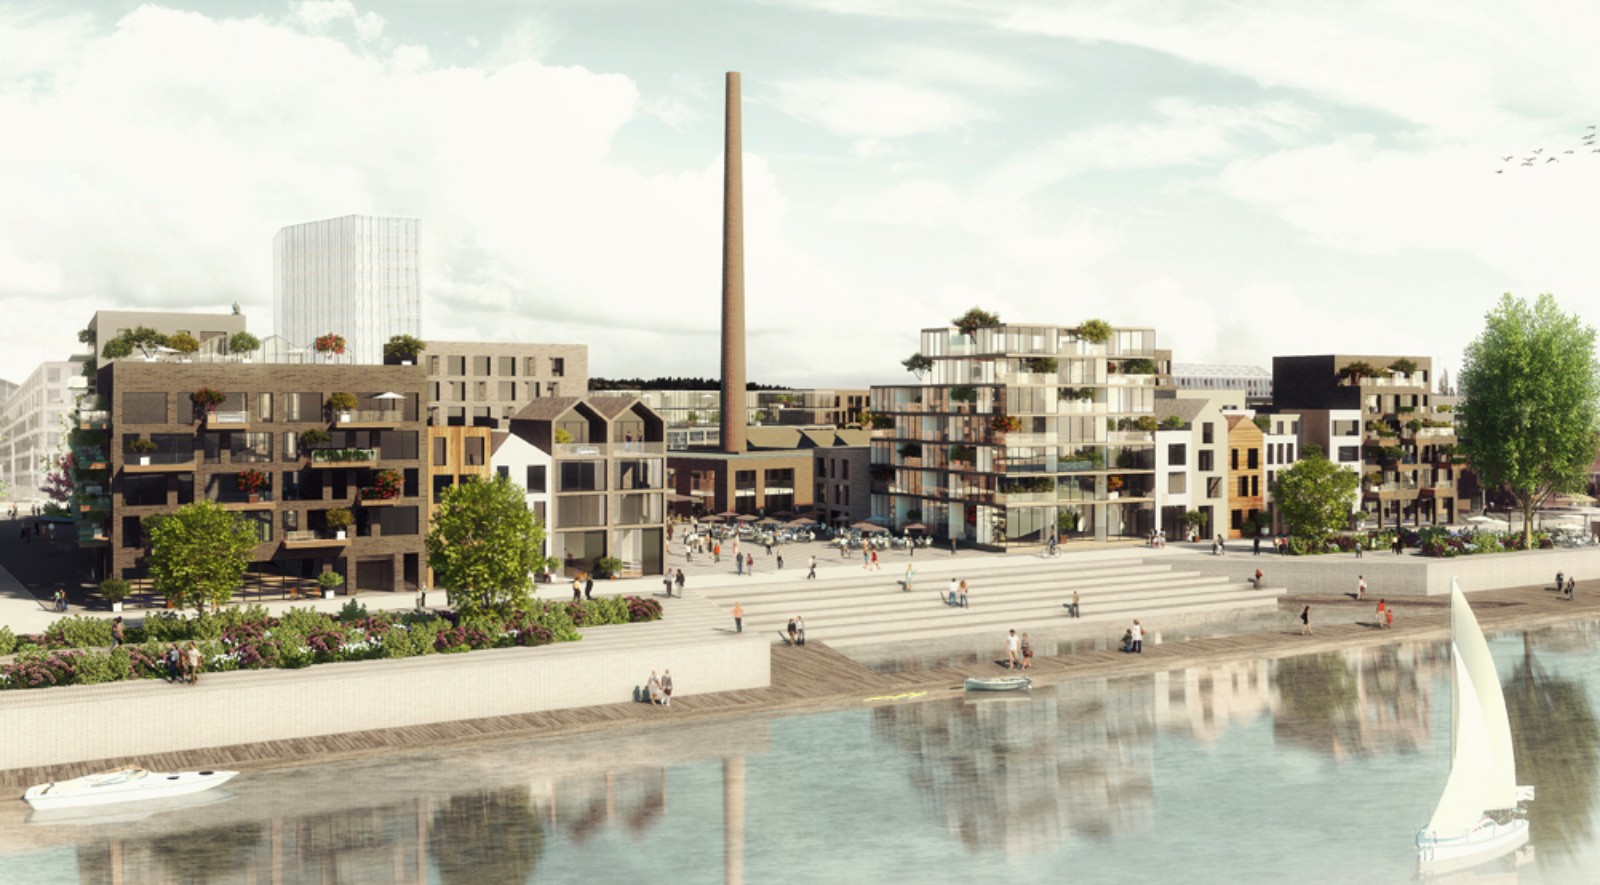 The Melkfabriek becomes Arnhem’s new hotspot